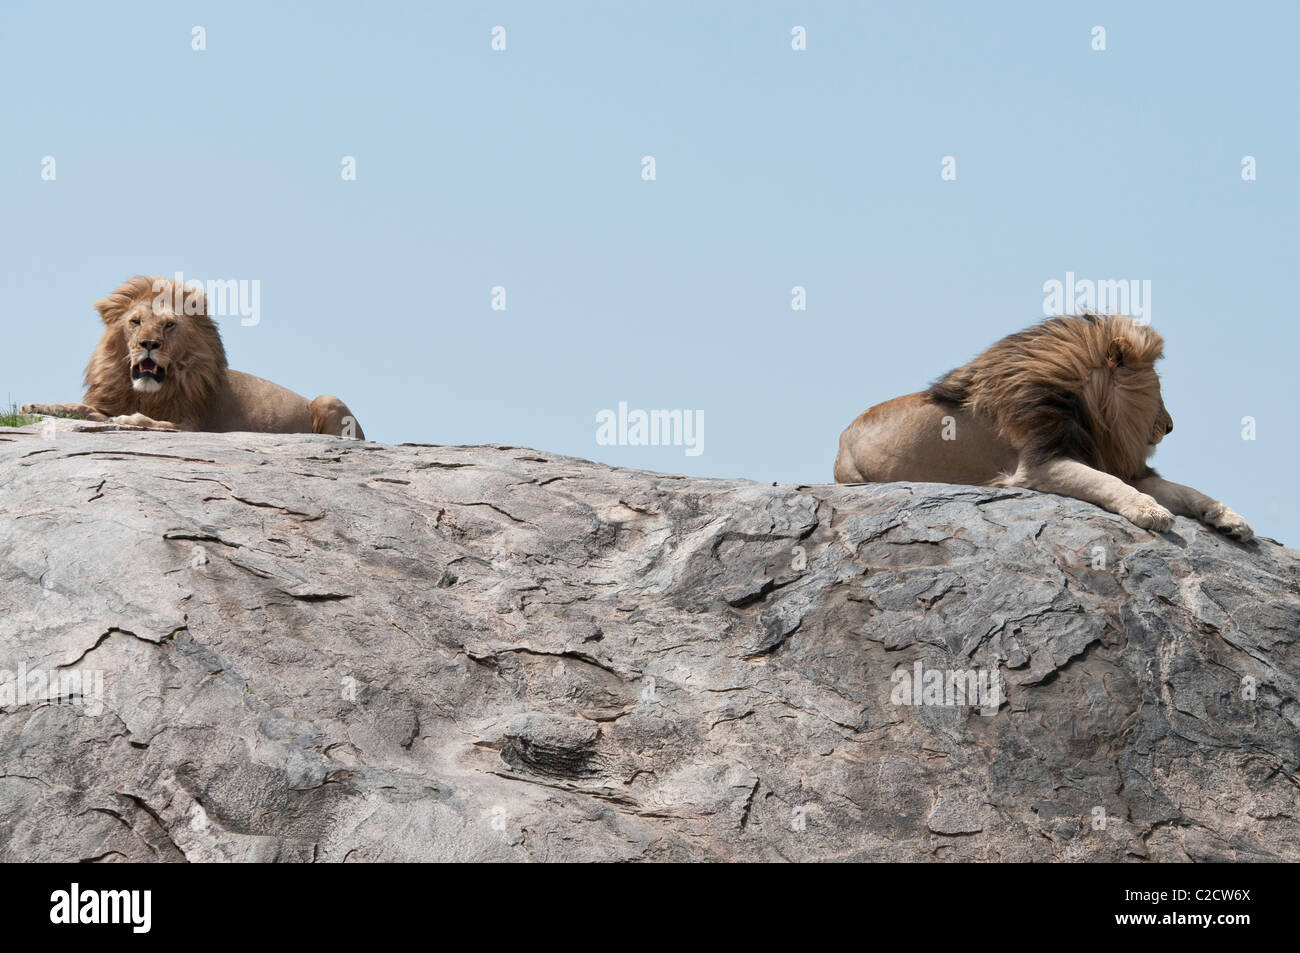 Stock Foto von zwei großen männlichen Löwen sitzt oben auf einem Kopje. Stockfoto